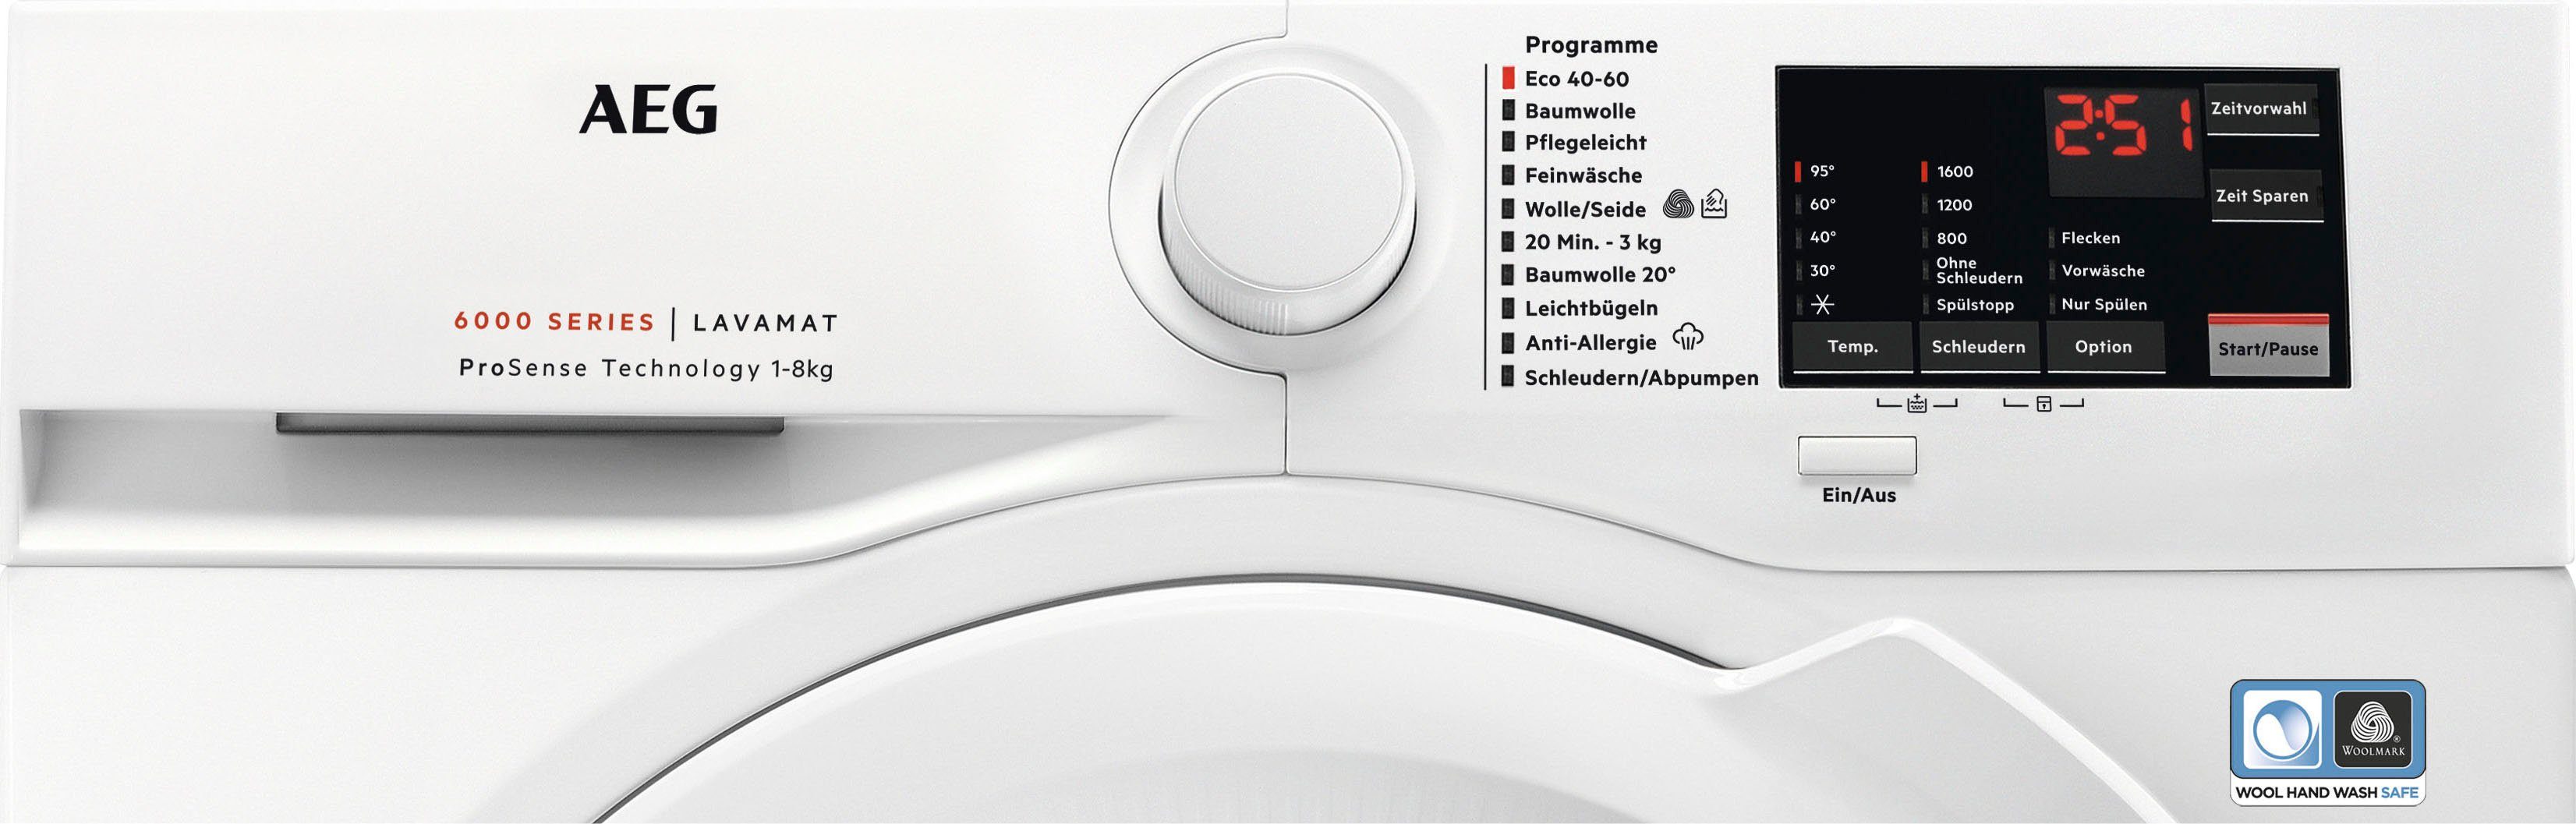 AEG Waschmaschine Serie 6000 mit kg, ProSense-Technologie Programm mit L6FA68FL, Hygiene-/ 1600 Dampf U/min, Anti-Allergie 8